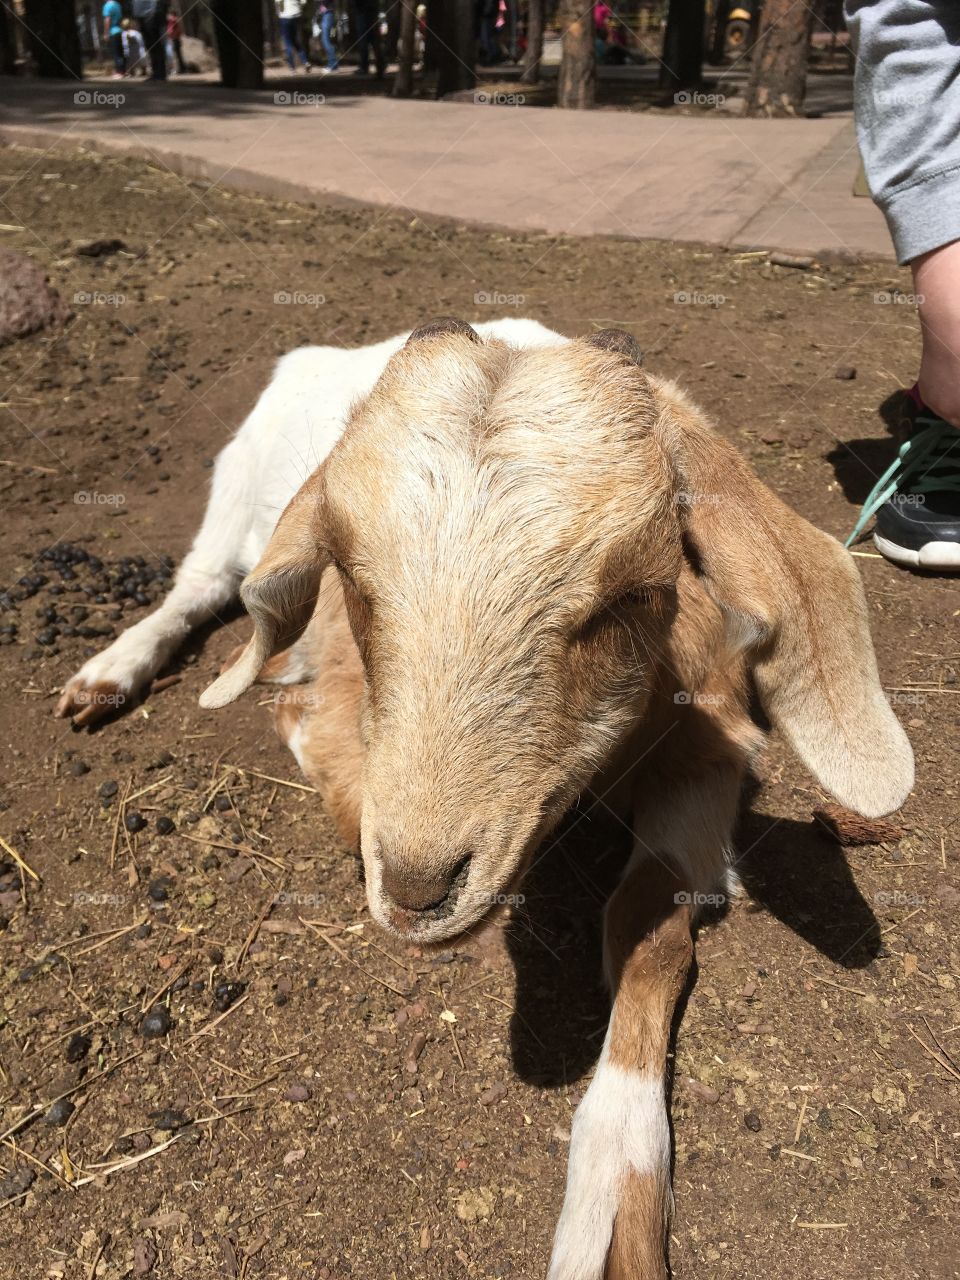 Goat in the petting zoo at Bearizona in Arizona.